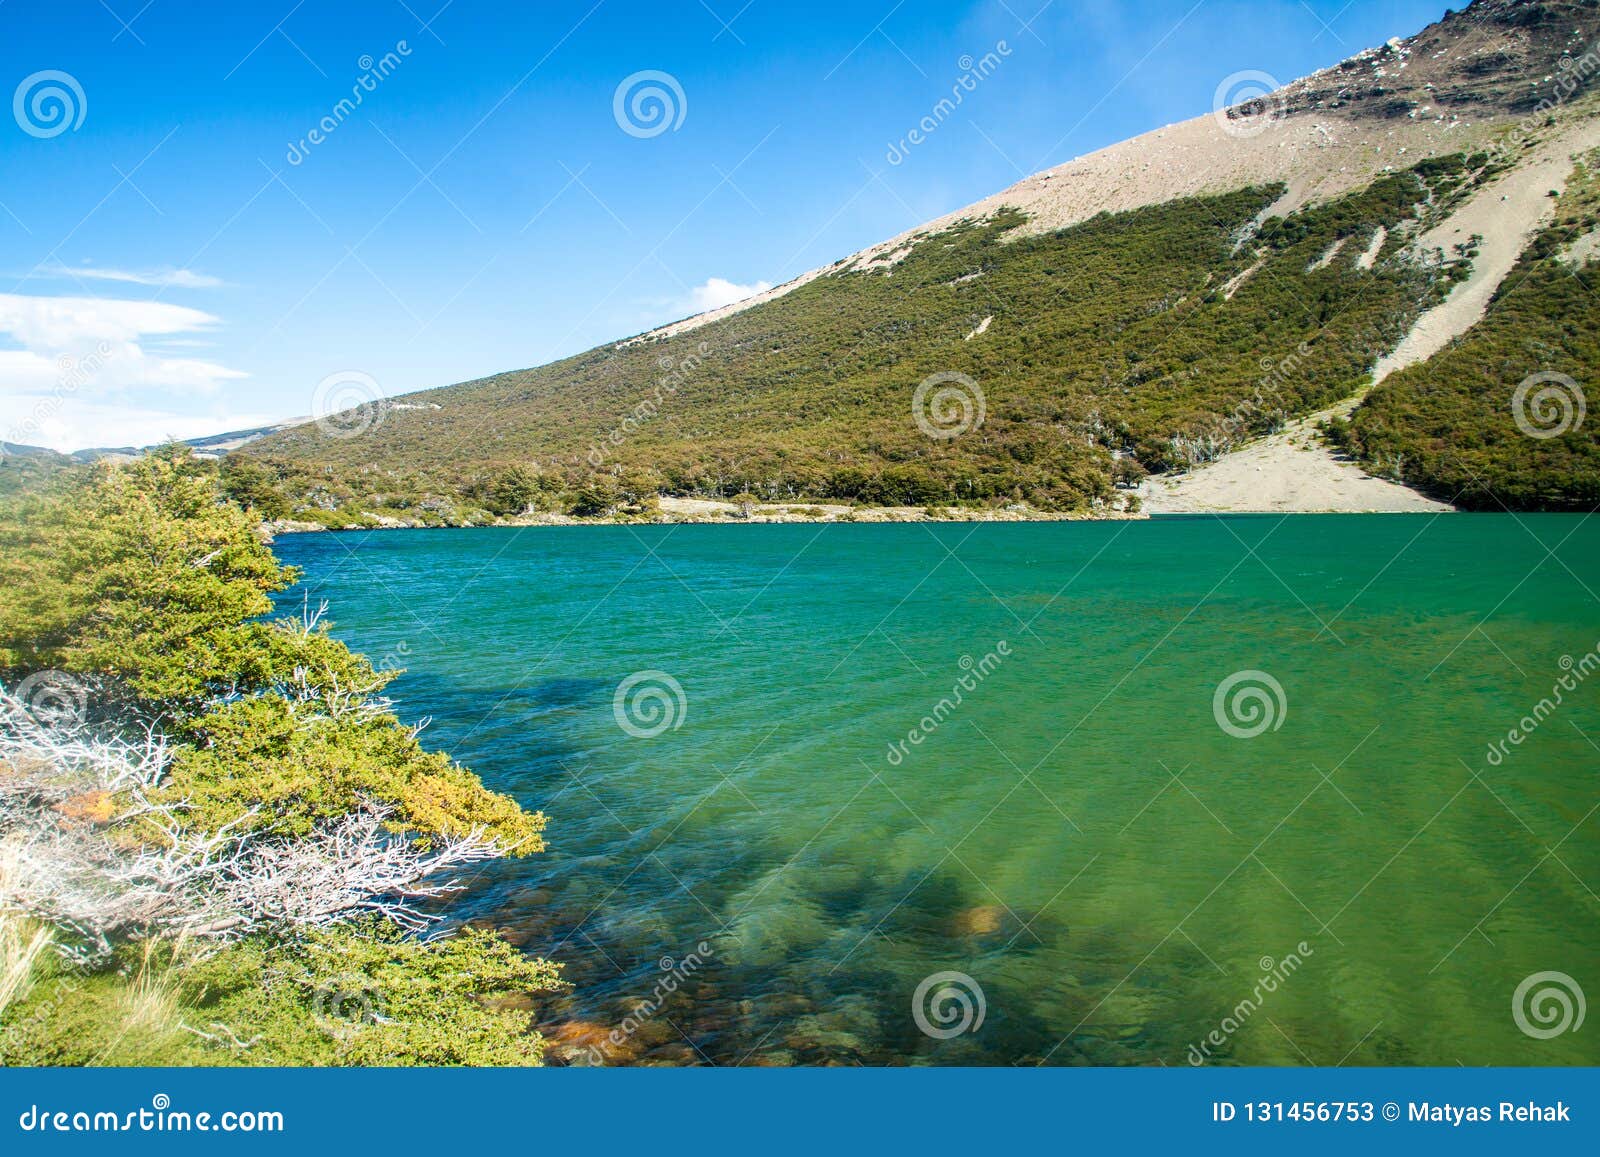 laguna madre e hija lake in national park los glaciares, patagonia, argenti